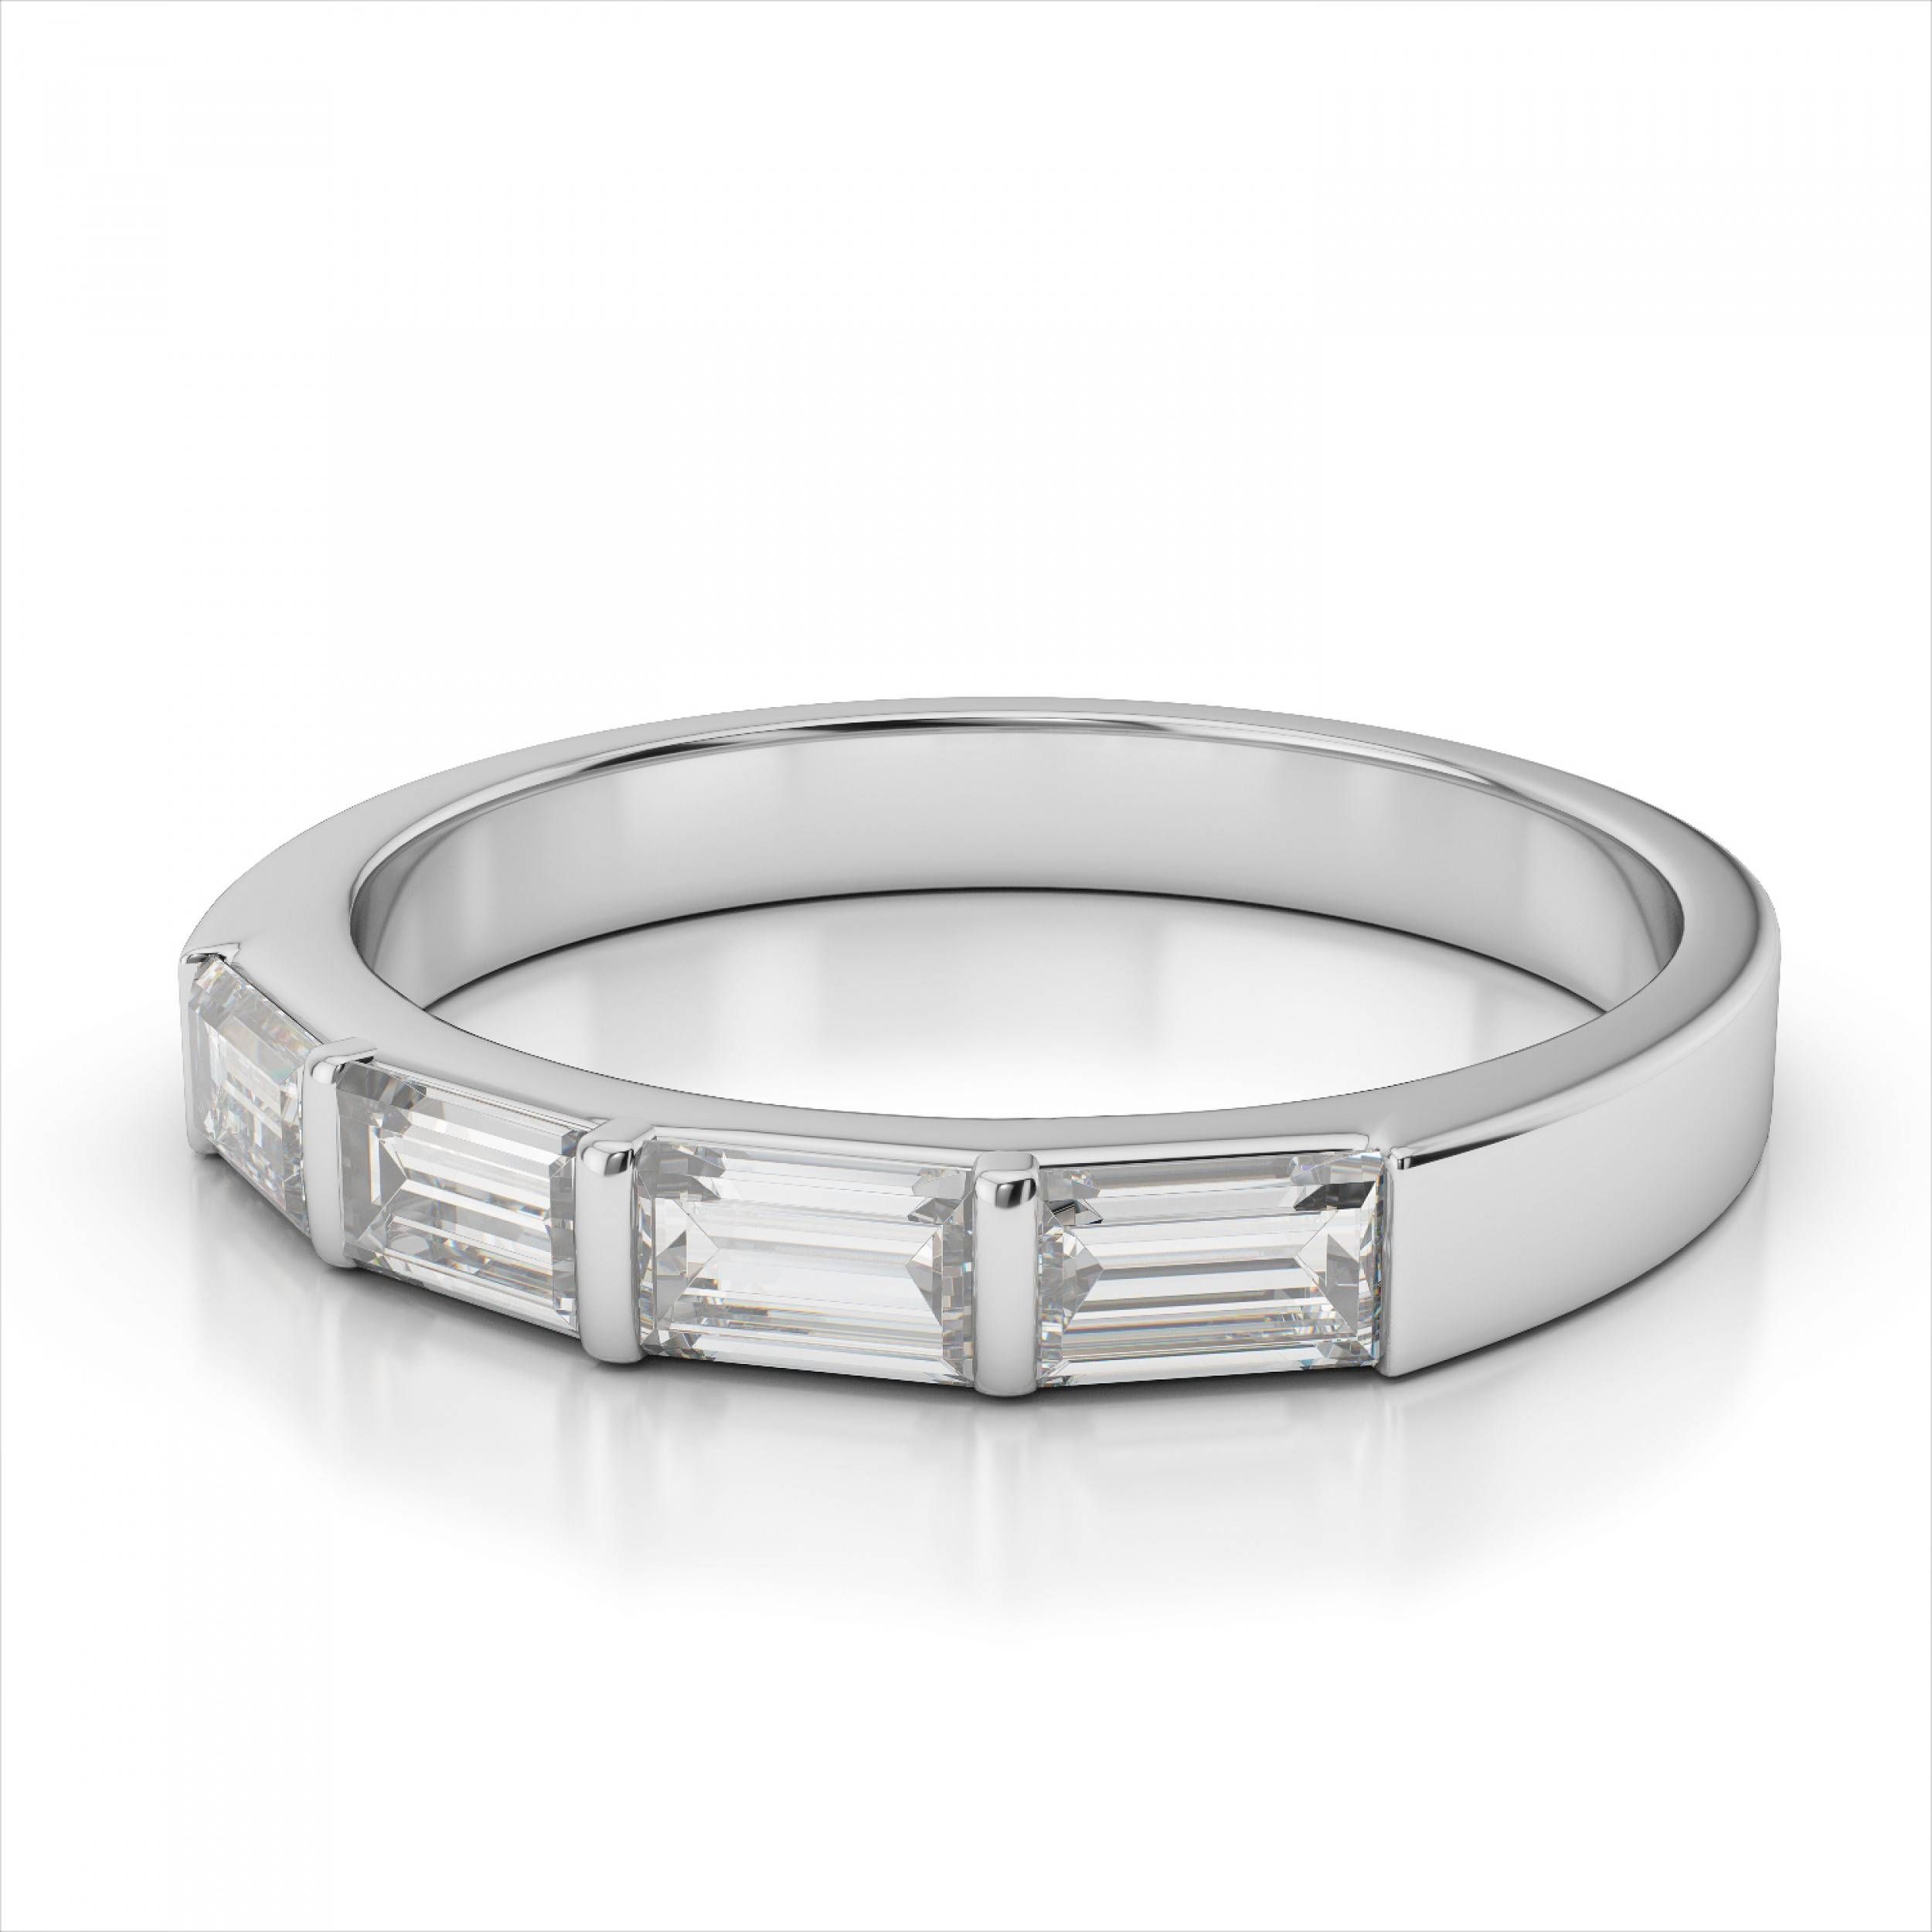 Bracelet : Baguette Diamond Bracelet Charismatic Baguette Diamond In Best And Newest Mens Baguette Diamond Wedding Bands (View 14 of 15)